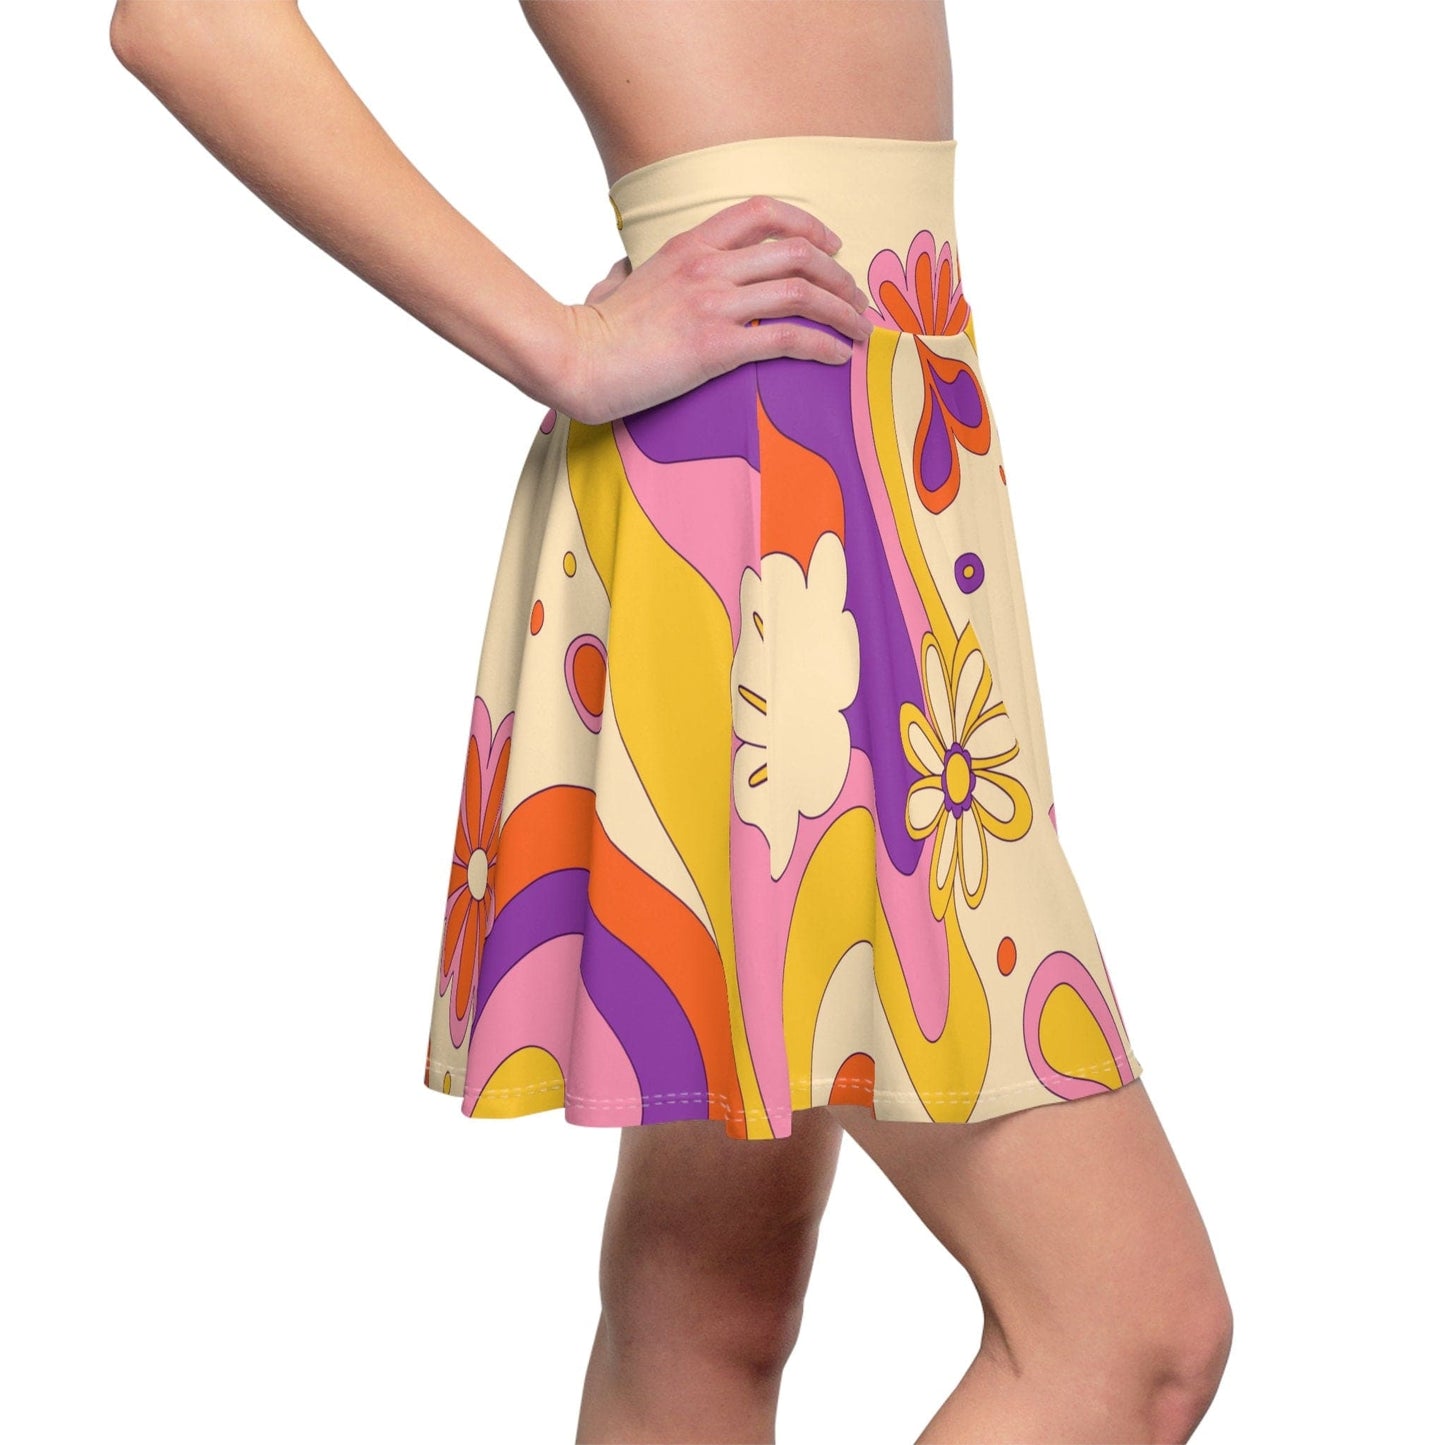 Kate McEnroe New York 60s, 70s Retro Flower Power Custom Women's Skater Skirt in Mid Century Modern Boho Shades of Beige, Burnt Orange, Mustard Yellow and Pink Skater Skirts M 24809219195907777729